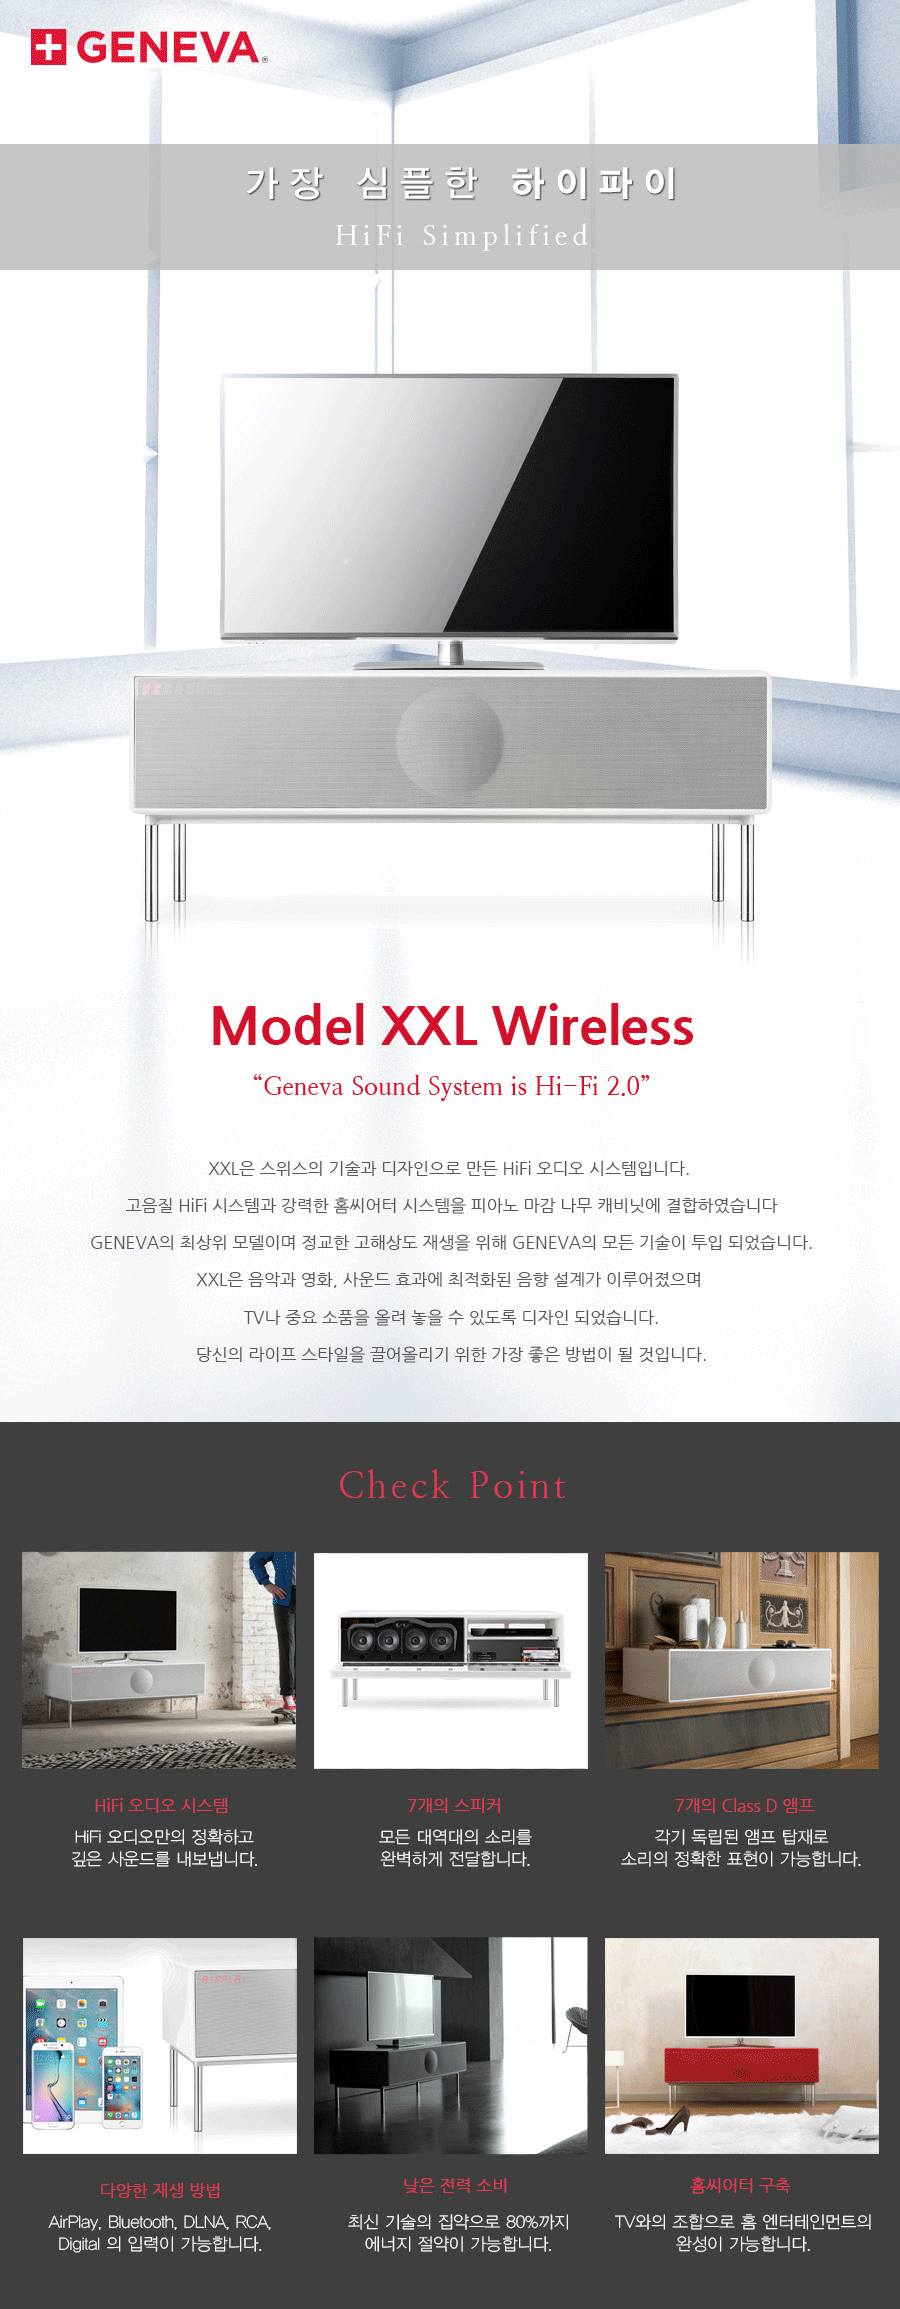 ModelXXLWireless_01.png